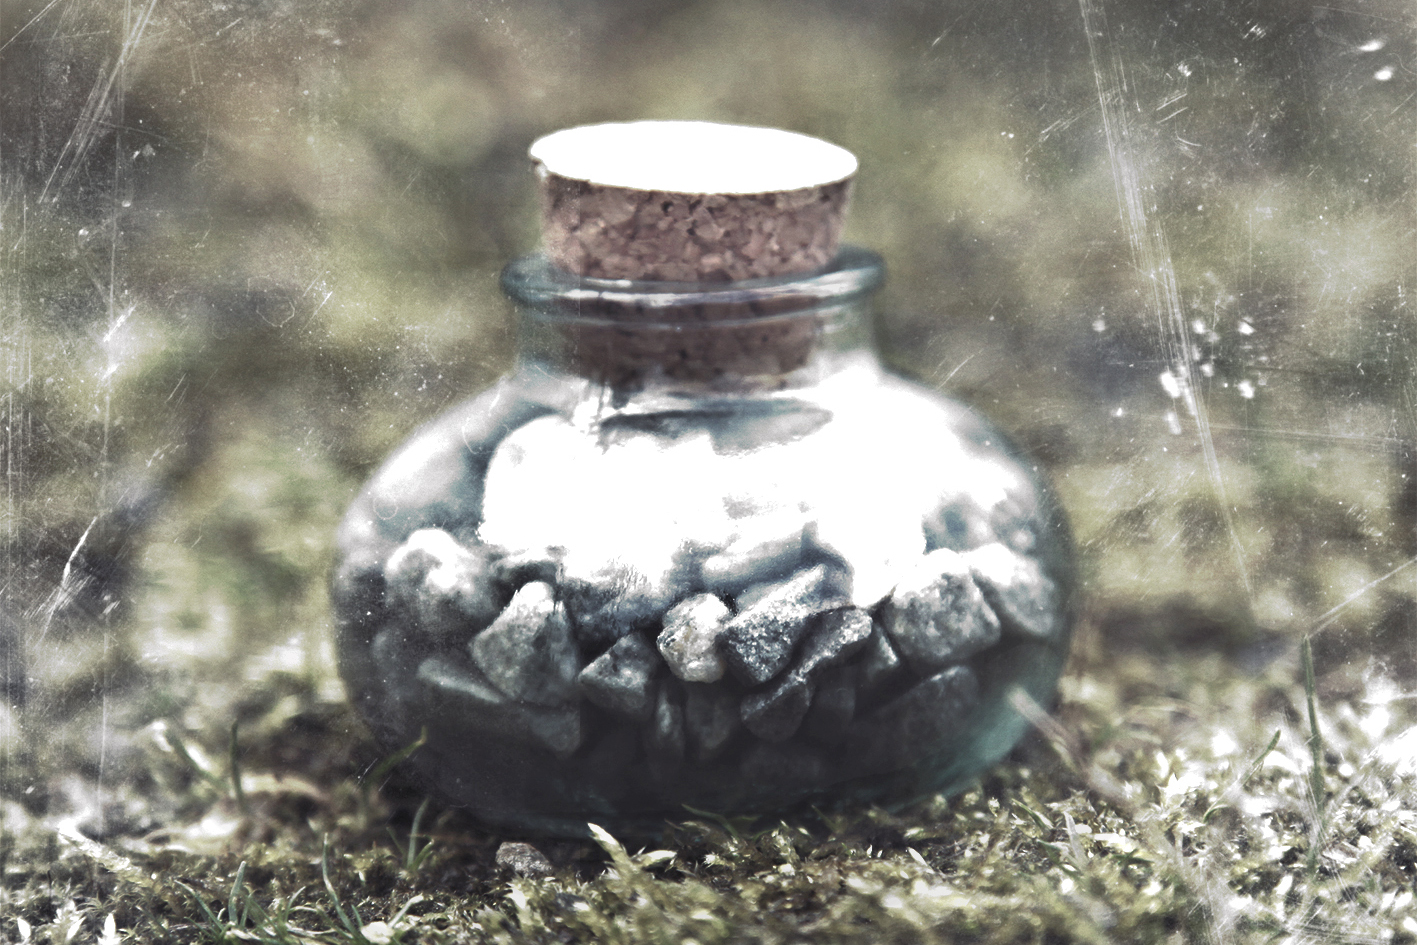 Bill Seaman - F (noir), pebbles in a corked bell jar